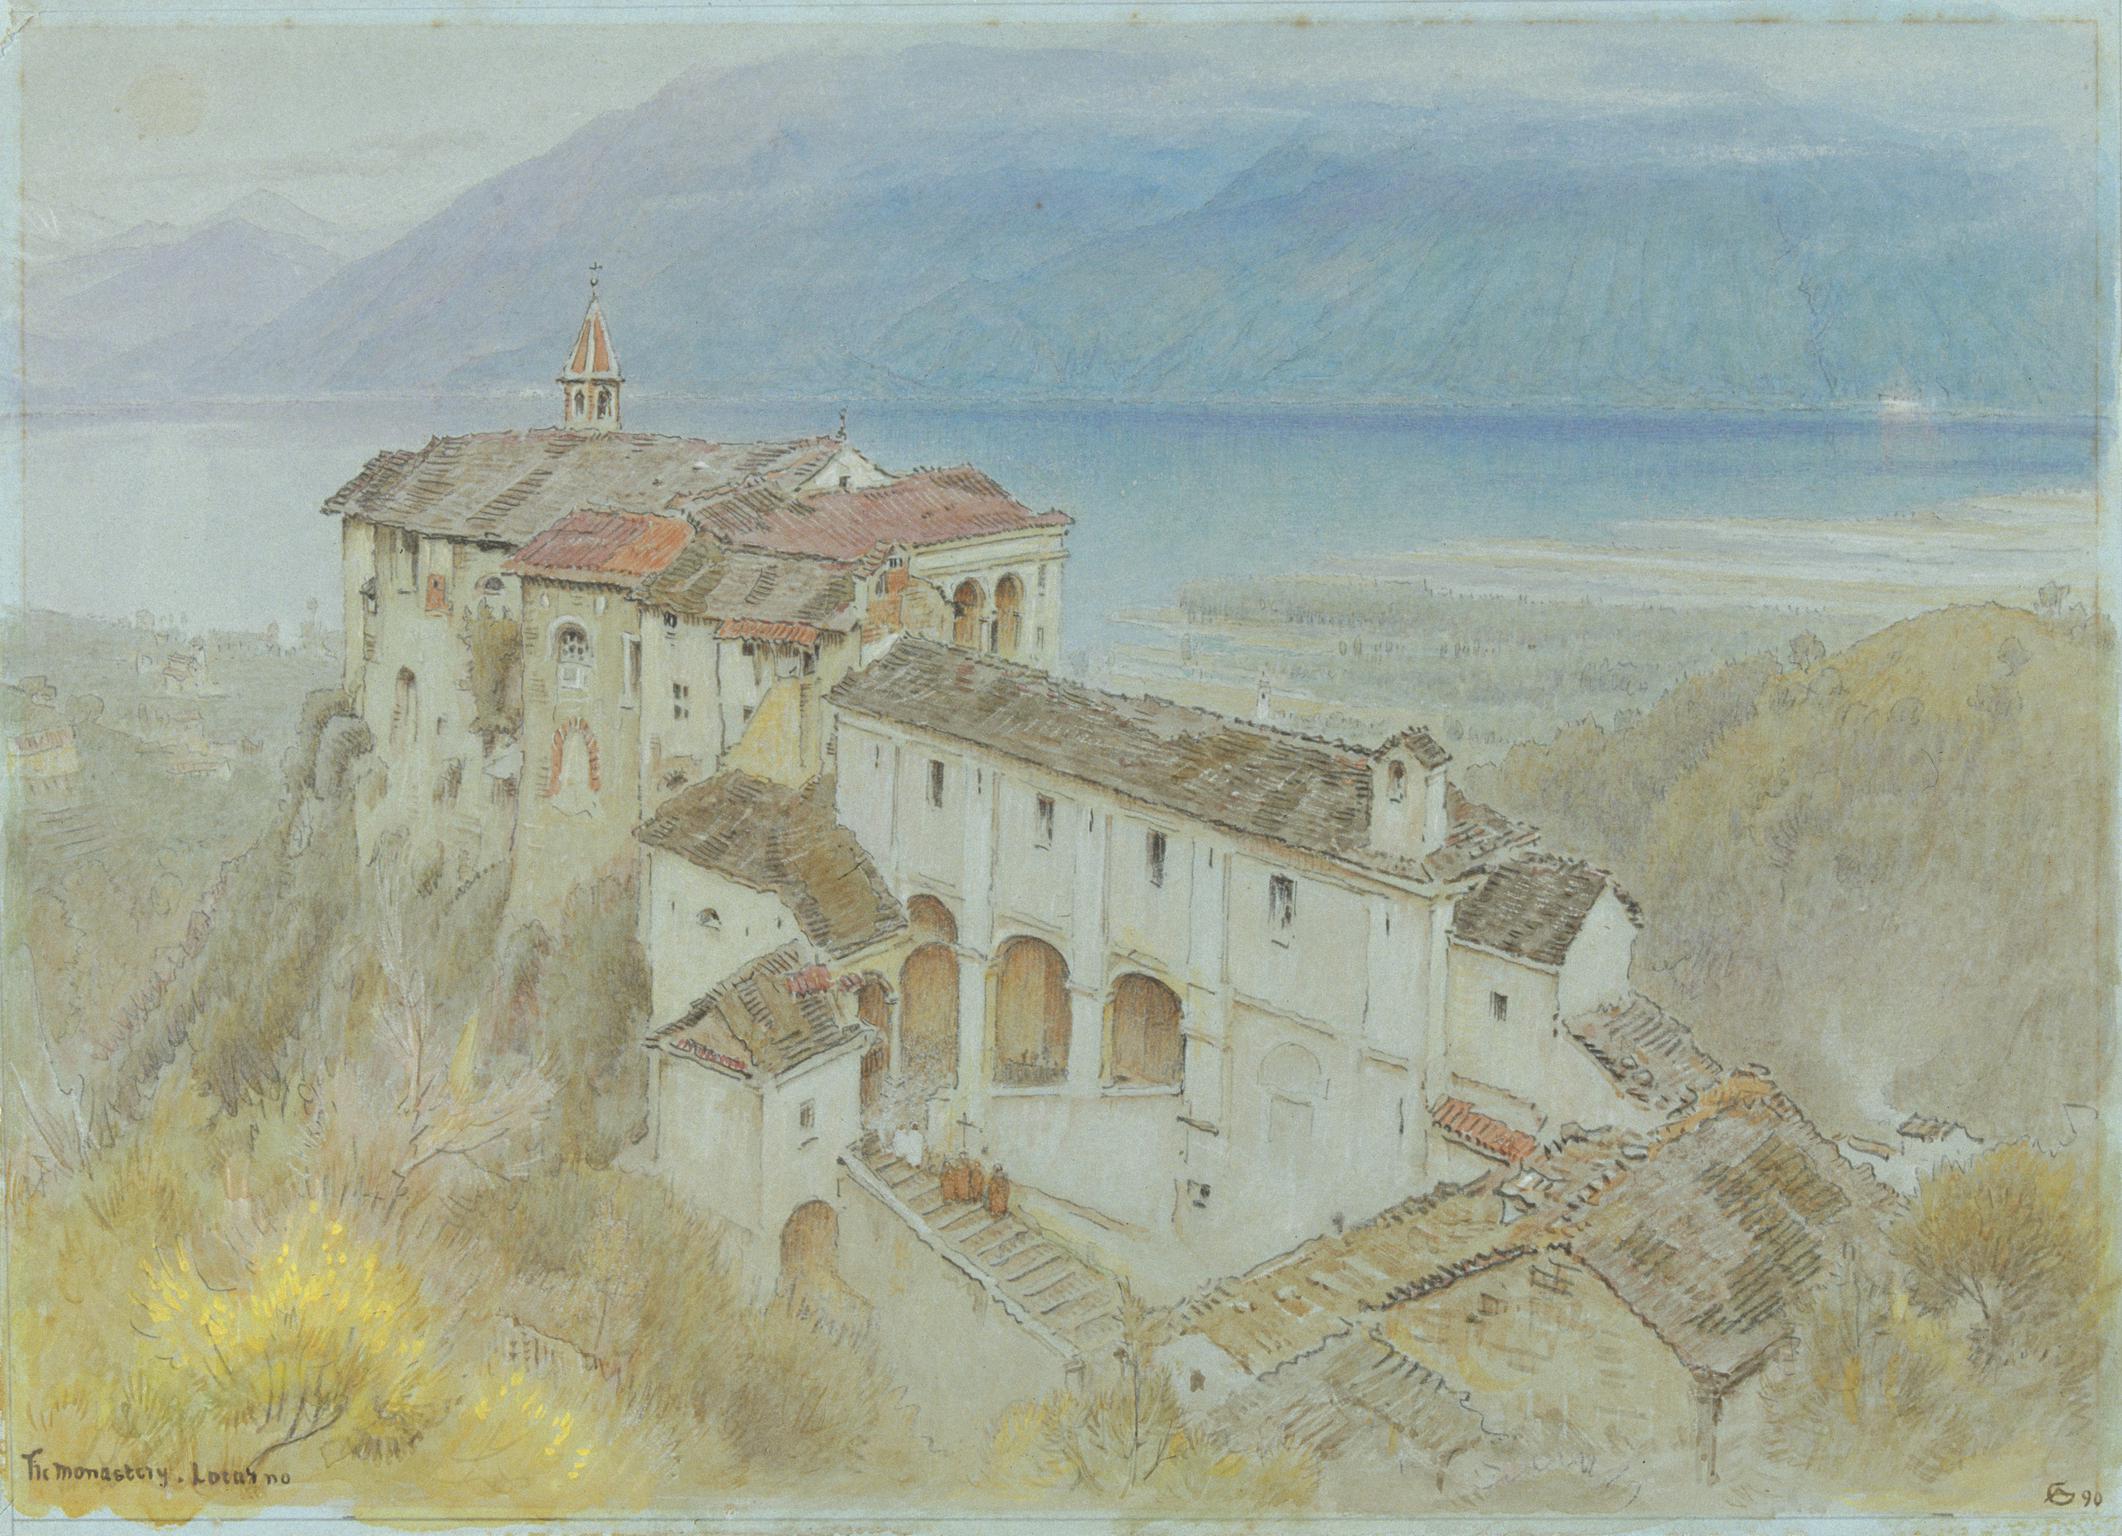 The Monastery Locarno